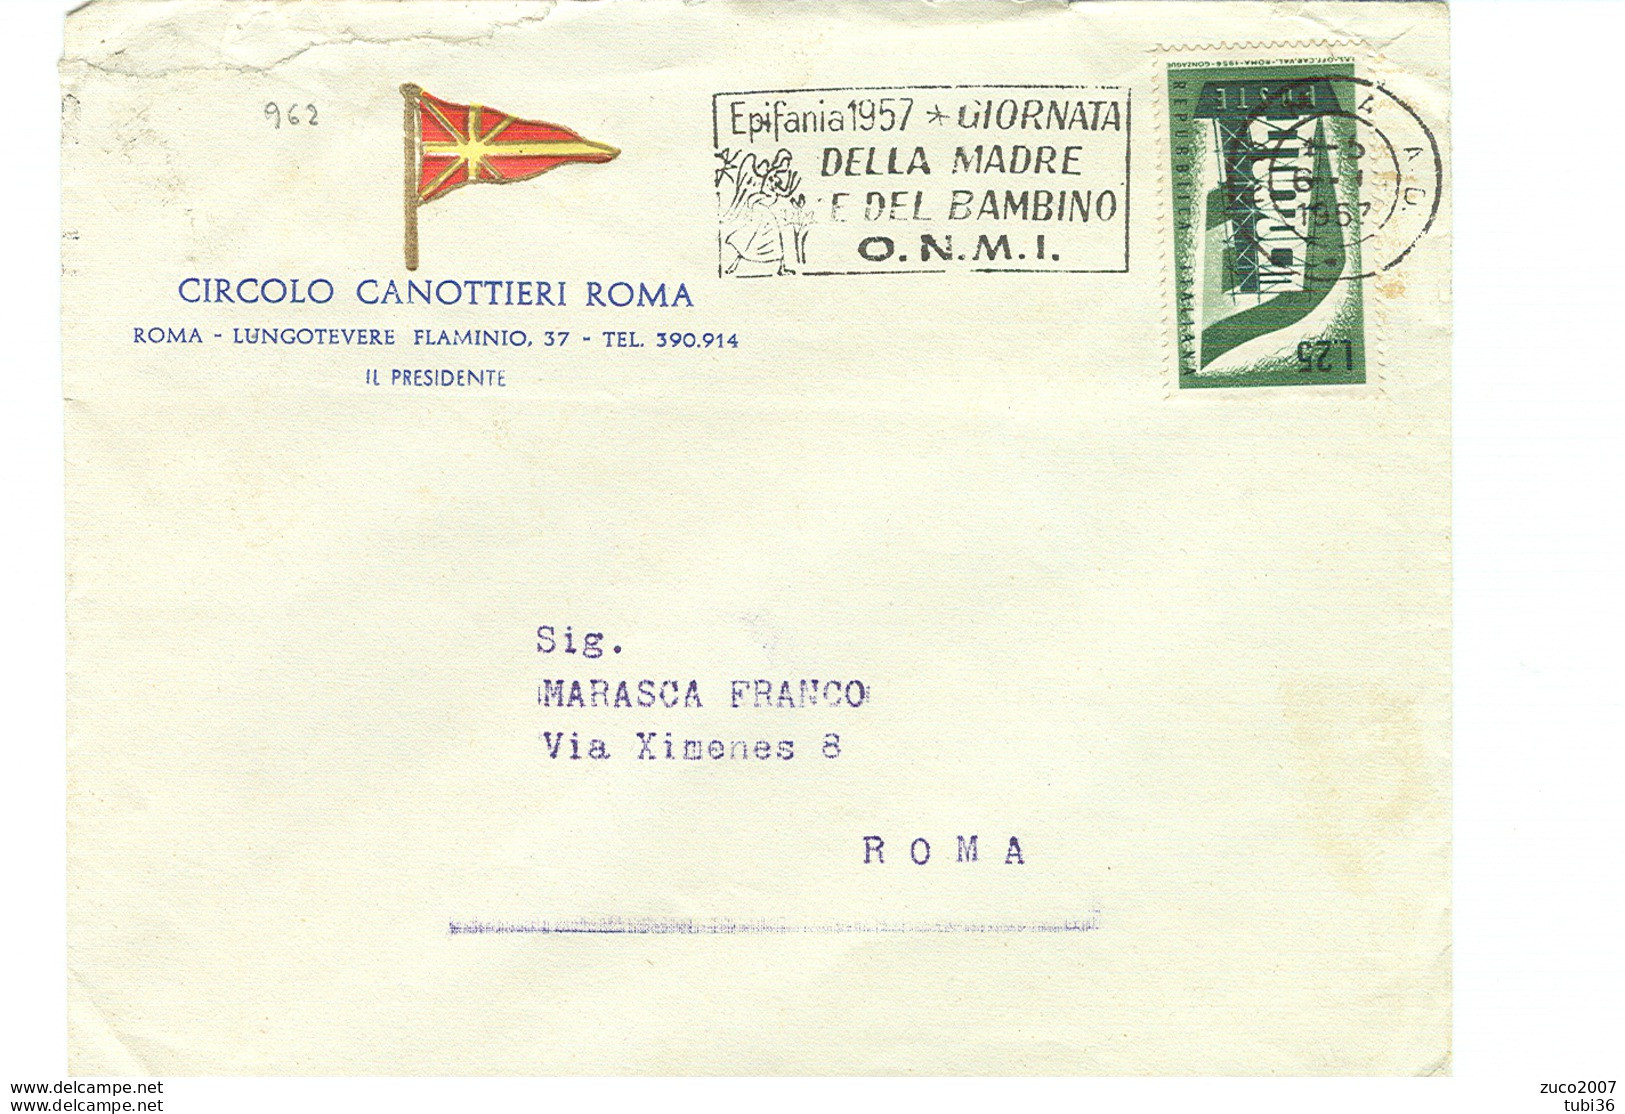 EPIFANIA 1957, GIORNATA DELLA MADRE E DEL BAMBINO- O.N.M.I.- TIMBRO POSTE ROMA TARGHETTA,1957,CIRCOLO CANOTTIERI,ROMA, - Muttertag